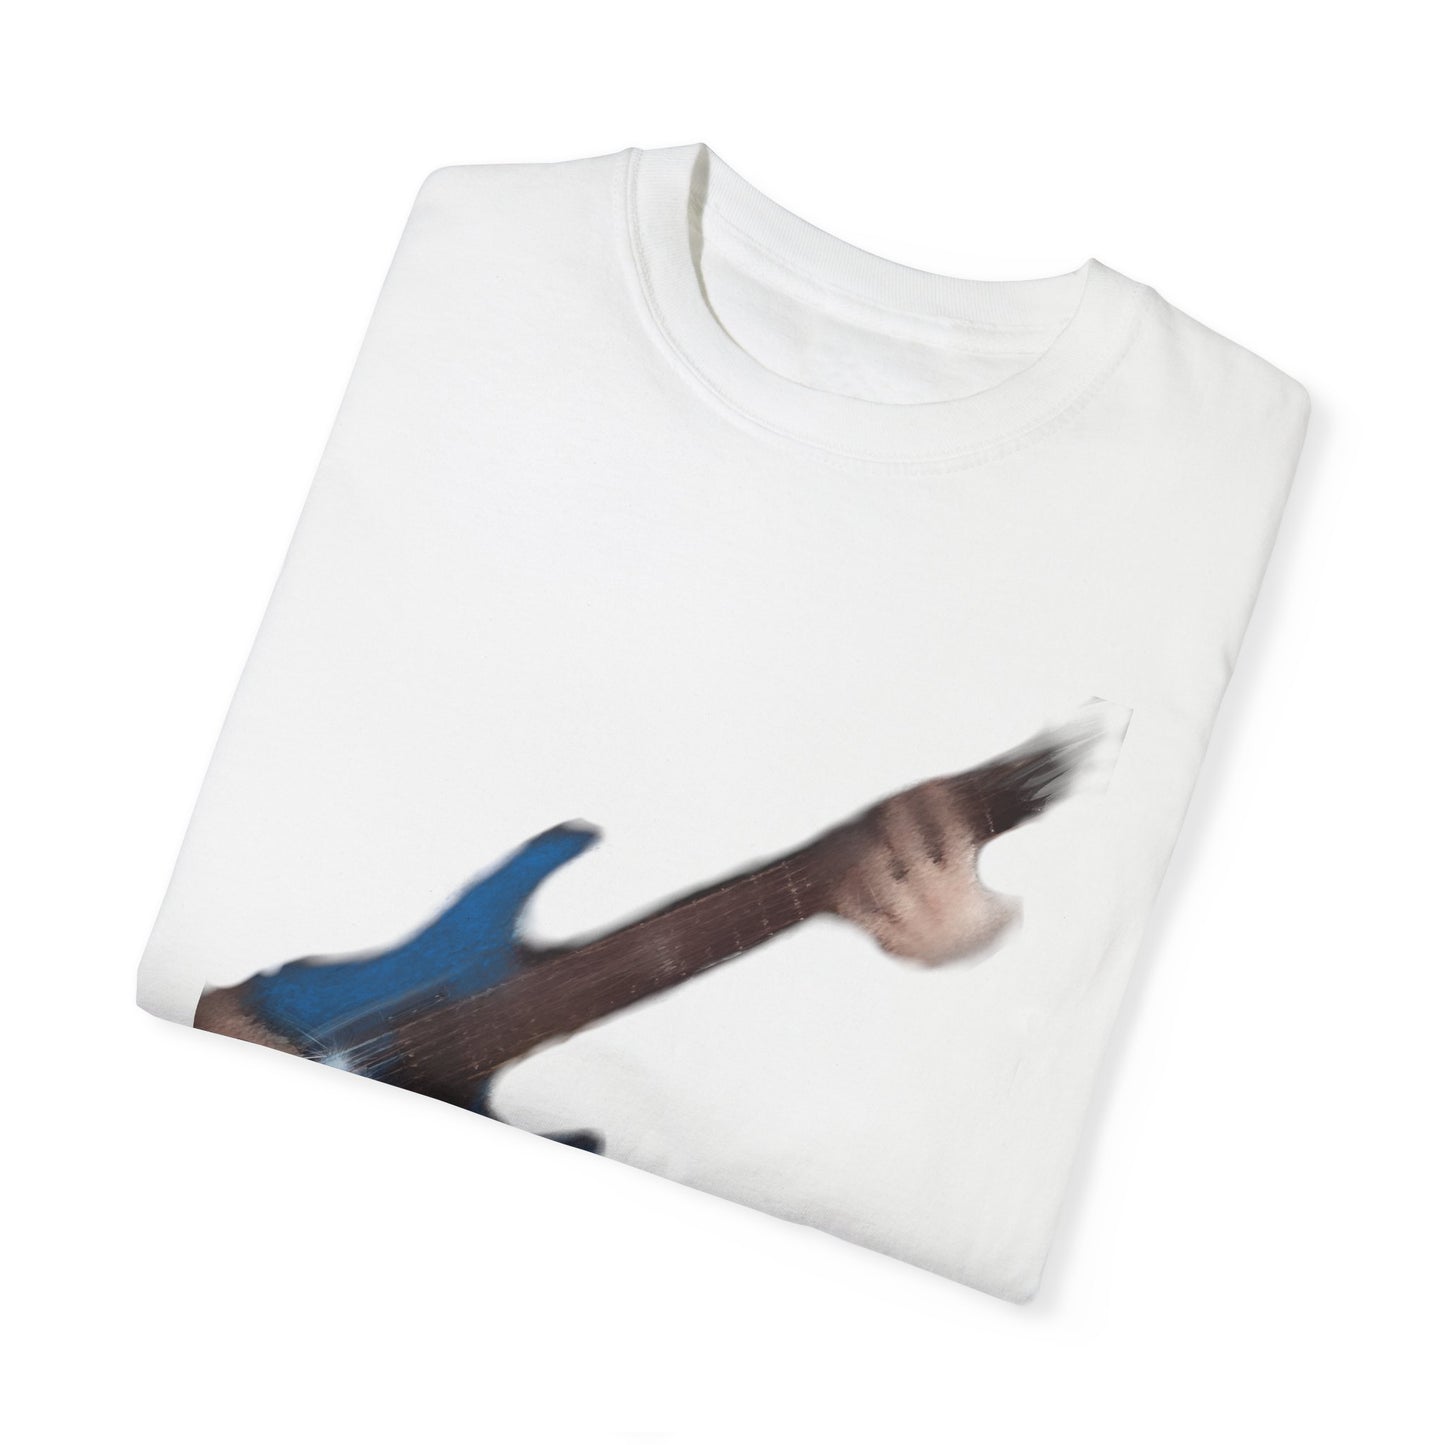 Blue Guitar T-shirt